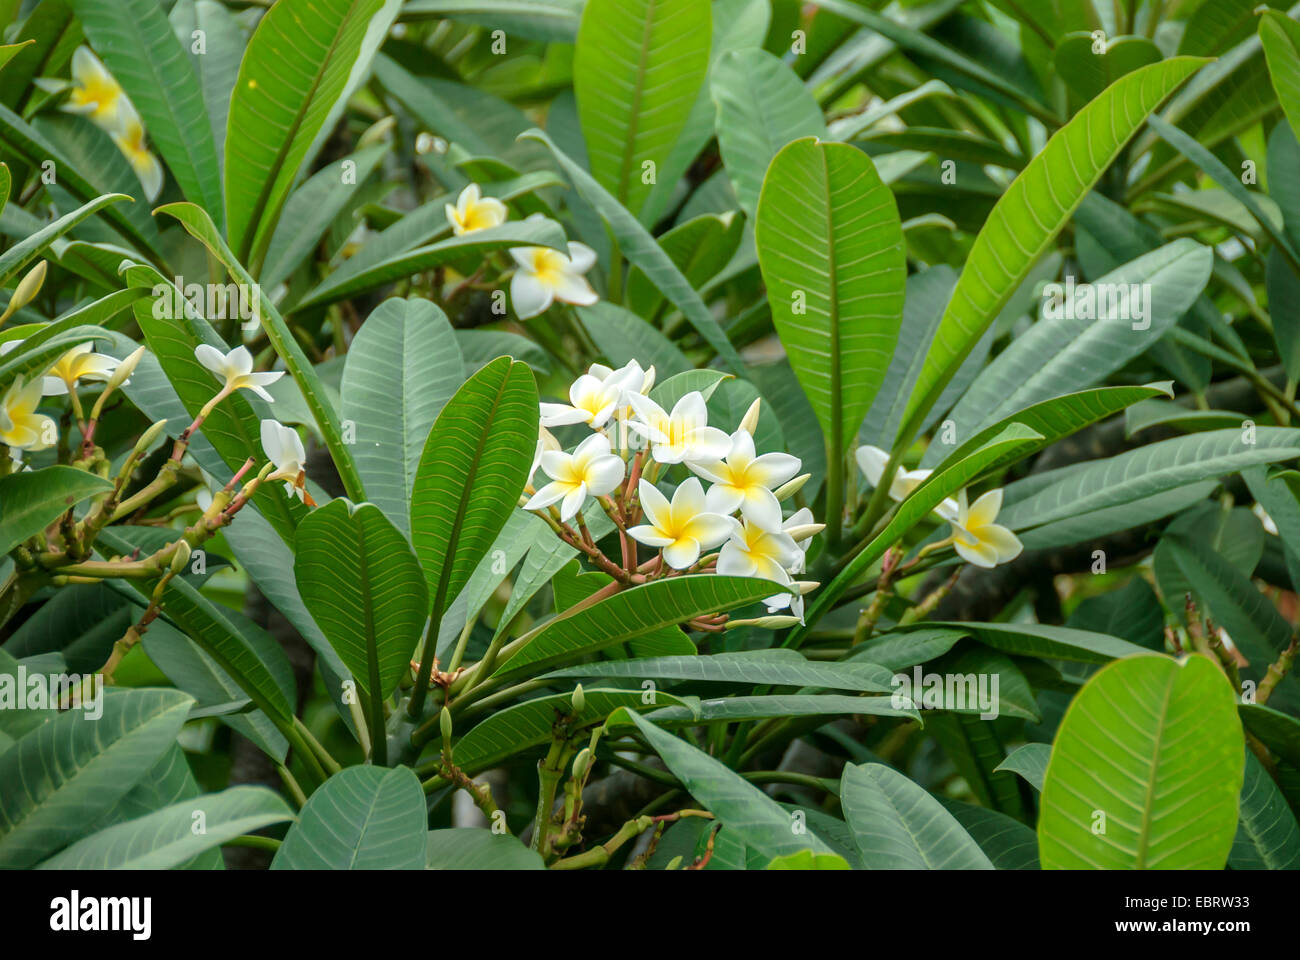 Impianto di frangipani, nosegaytree (Plumeria Alba), fioritura, Portogallo, la Madera Foto Stock